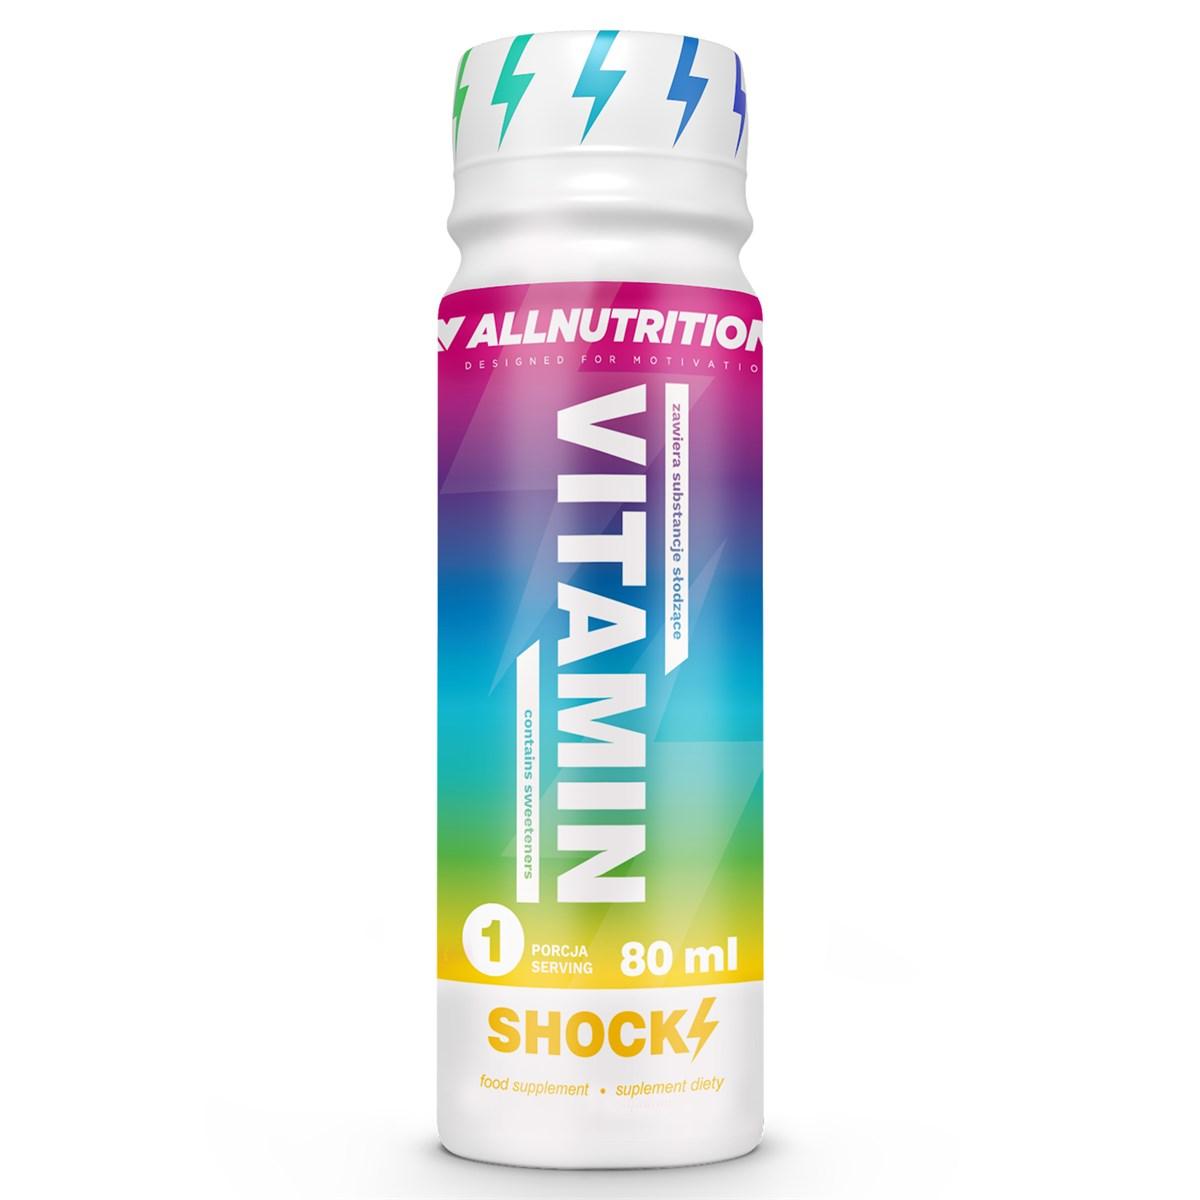 Комплекс витаминов AllNutrition Vitamin Shock (12x80 г) алл нутришн,  мл, AllNutrition. Витаминно-минеральный комплекс. Поддержание здоровья Укрепление иммунитета 